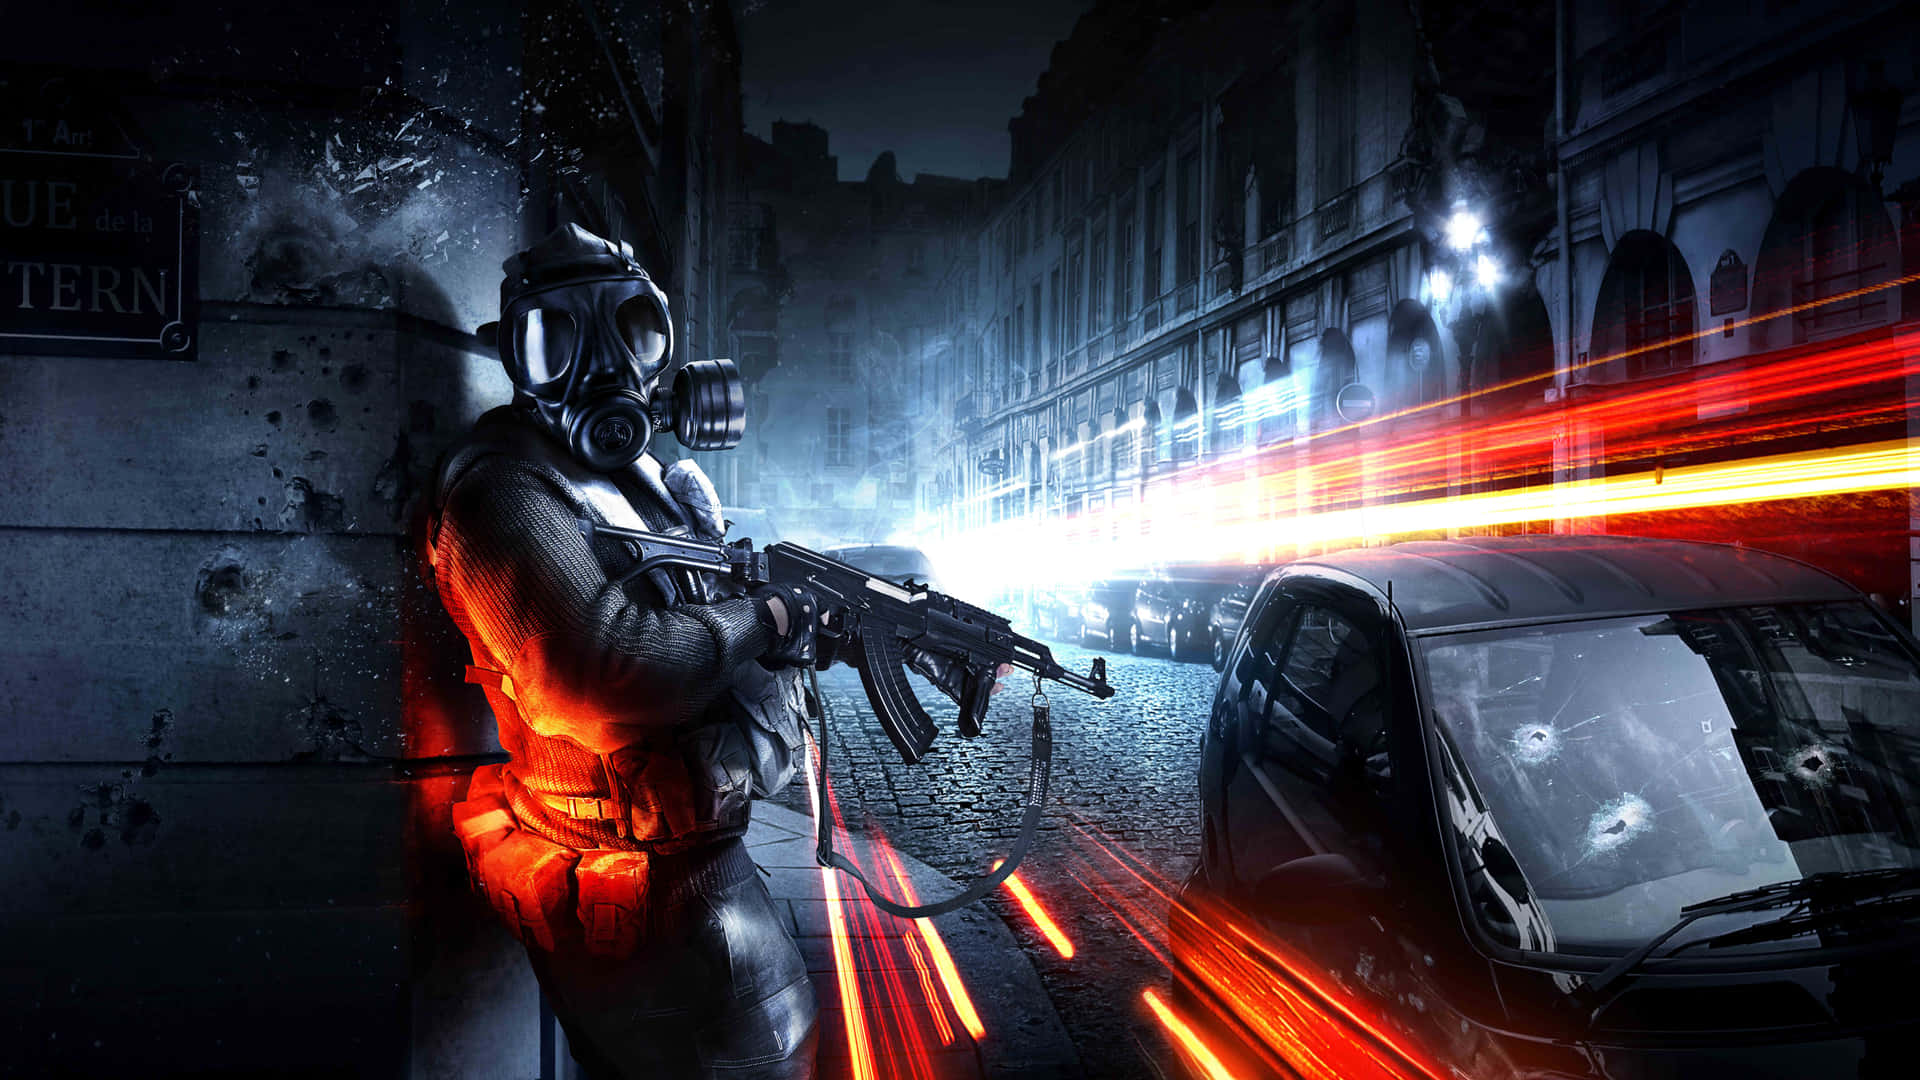 Upplevden Explosiva Actionen Av Battlefield 4k På Din Datorskärm Eller Mobilbakgrund. Wallpaper